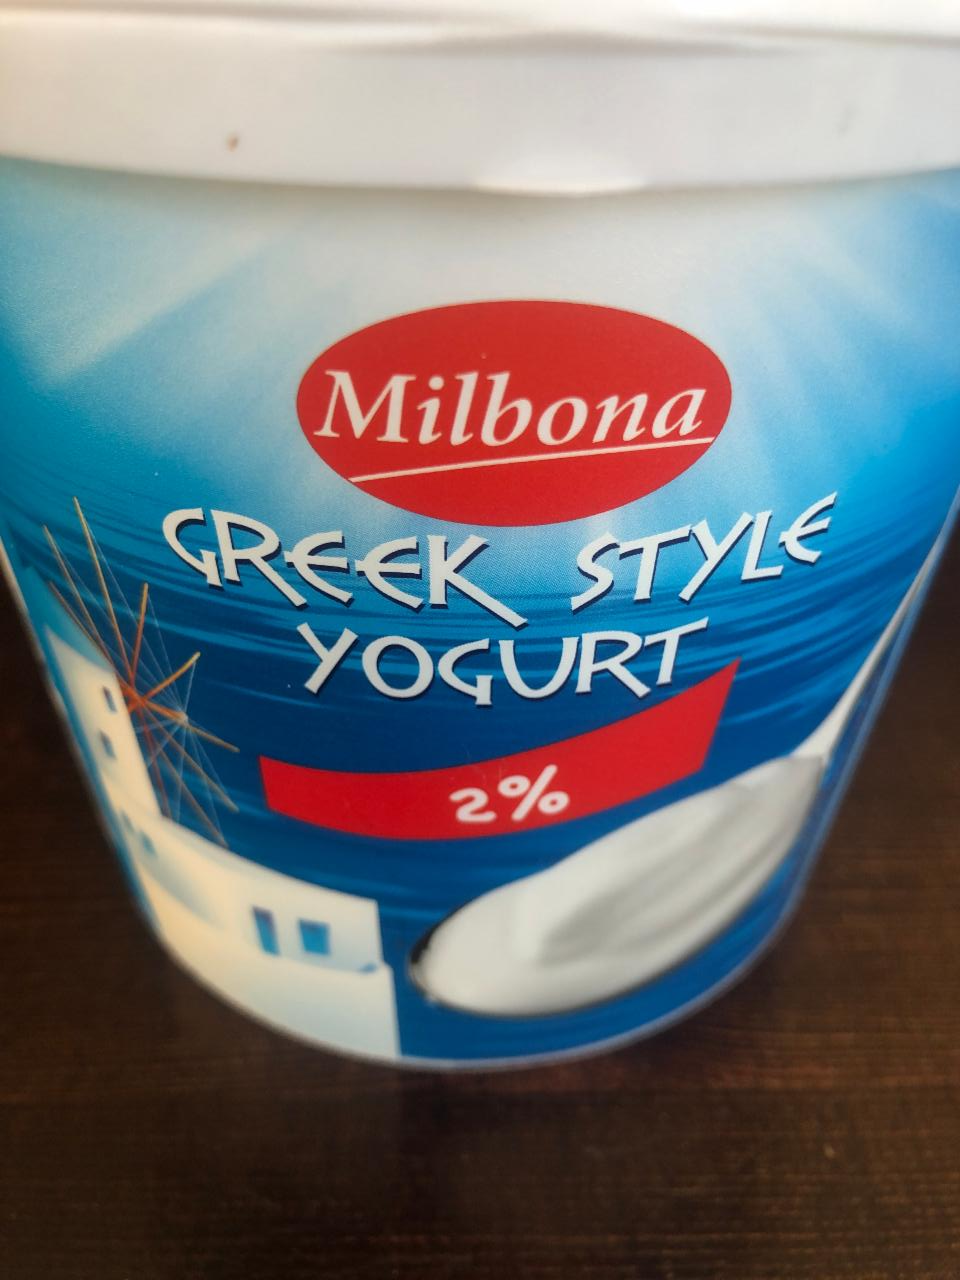 Fotografie - Greek style yogurt 2% fat (jogurt bílý se sníženým obsahem tuku 2%) Milbona